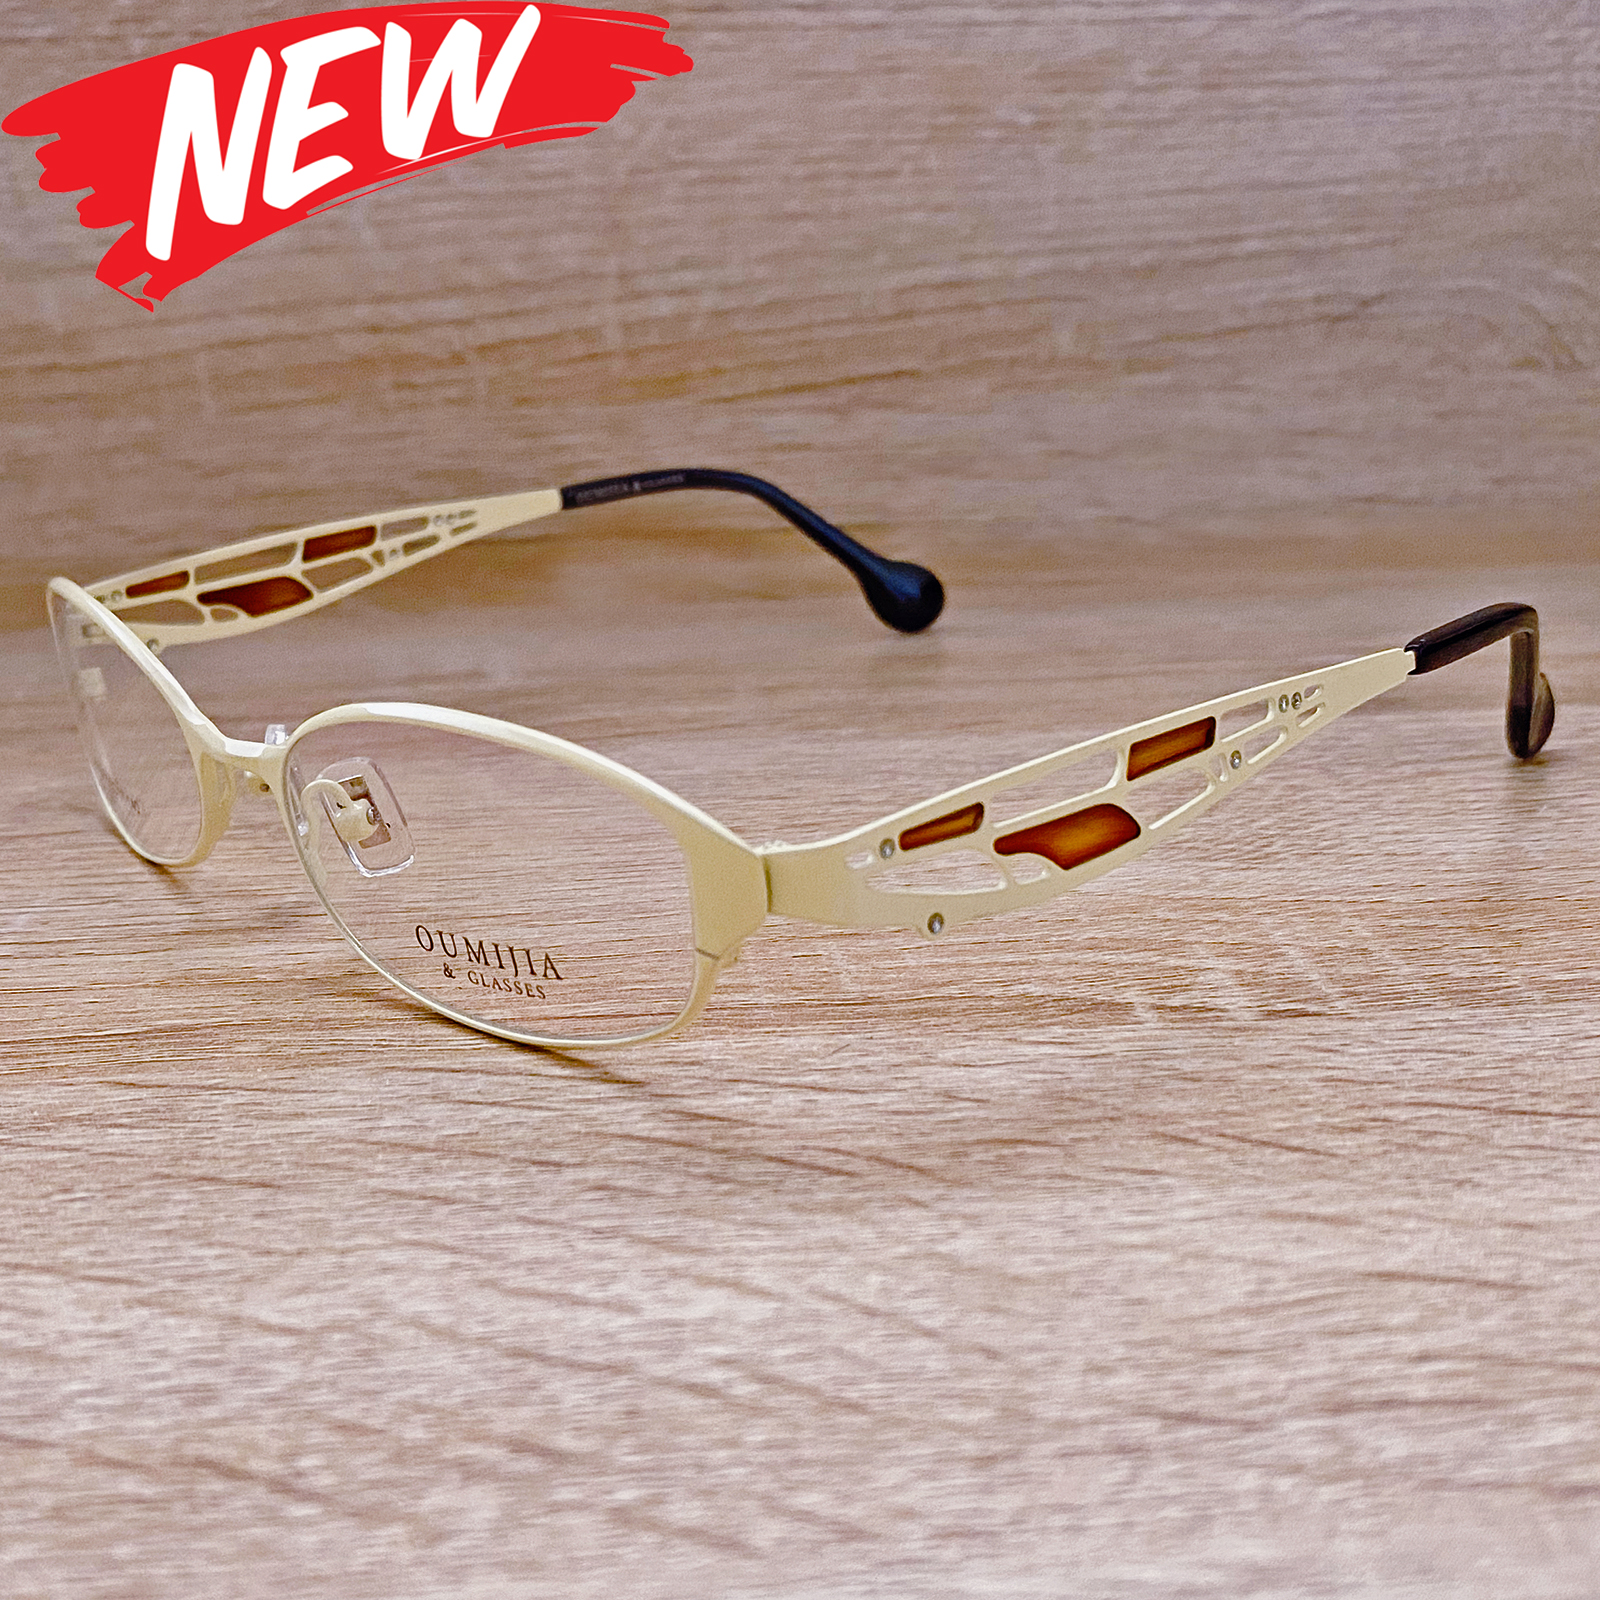 กรอบแว่นตา สำหรับตัดเลนส์ แว่นตา Fashion รุ่น Corolla 6631 สีครีม กรอบเต็ม ทรงสวย ขาข้อต่อ วัสดุ สแตนเลส สตีล